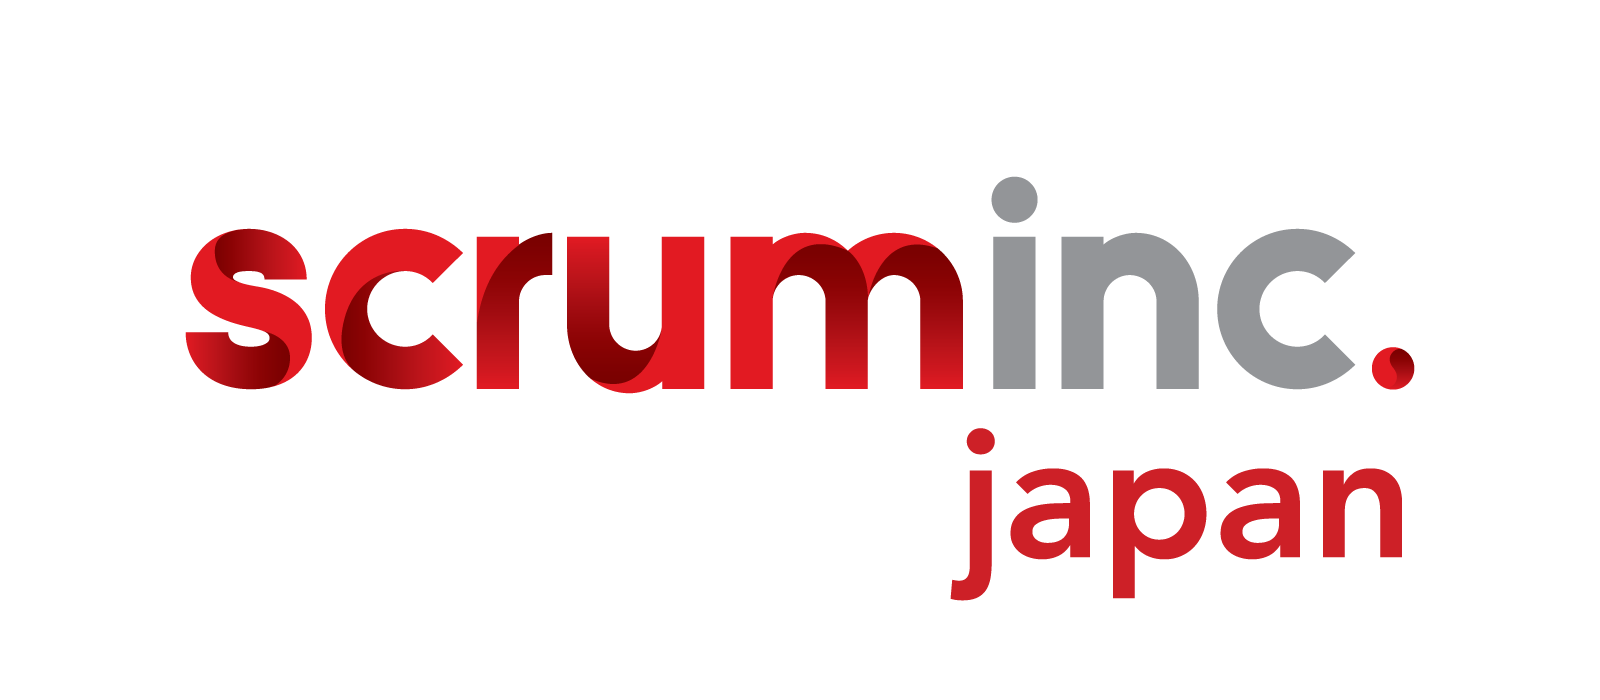 Scrum Inc. Japan ヘルプセンターのホームページ